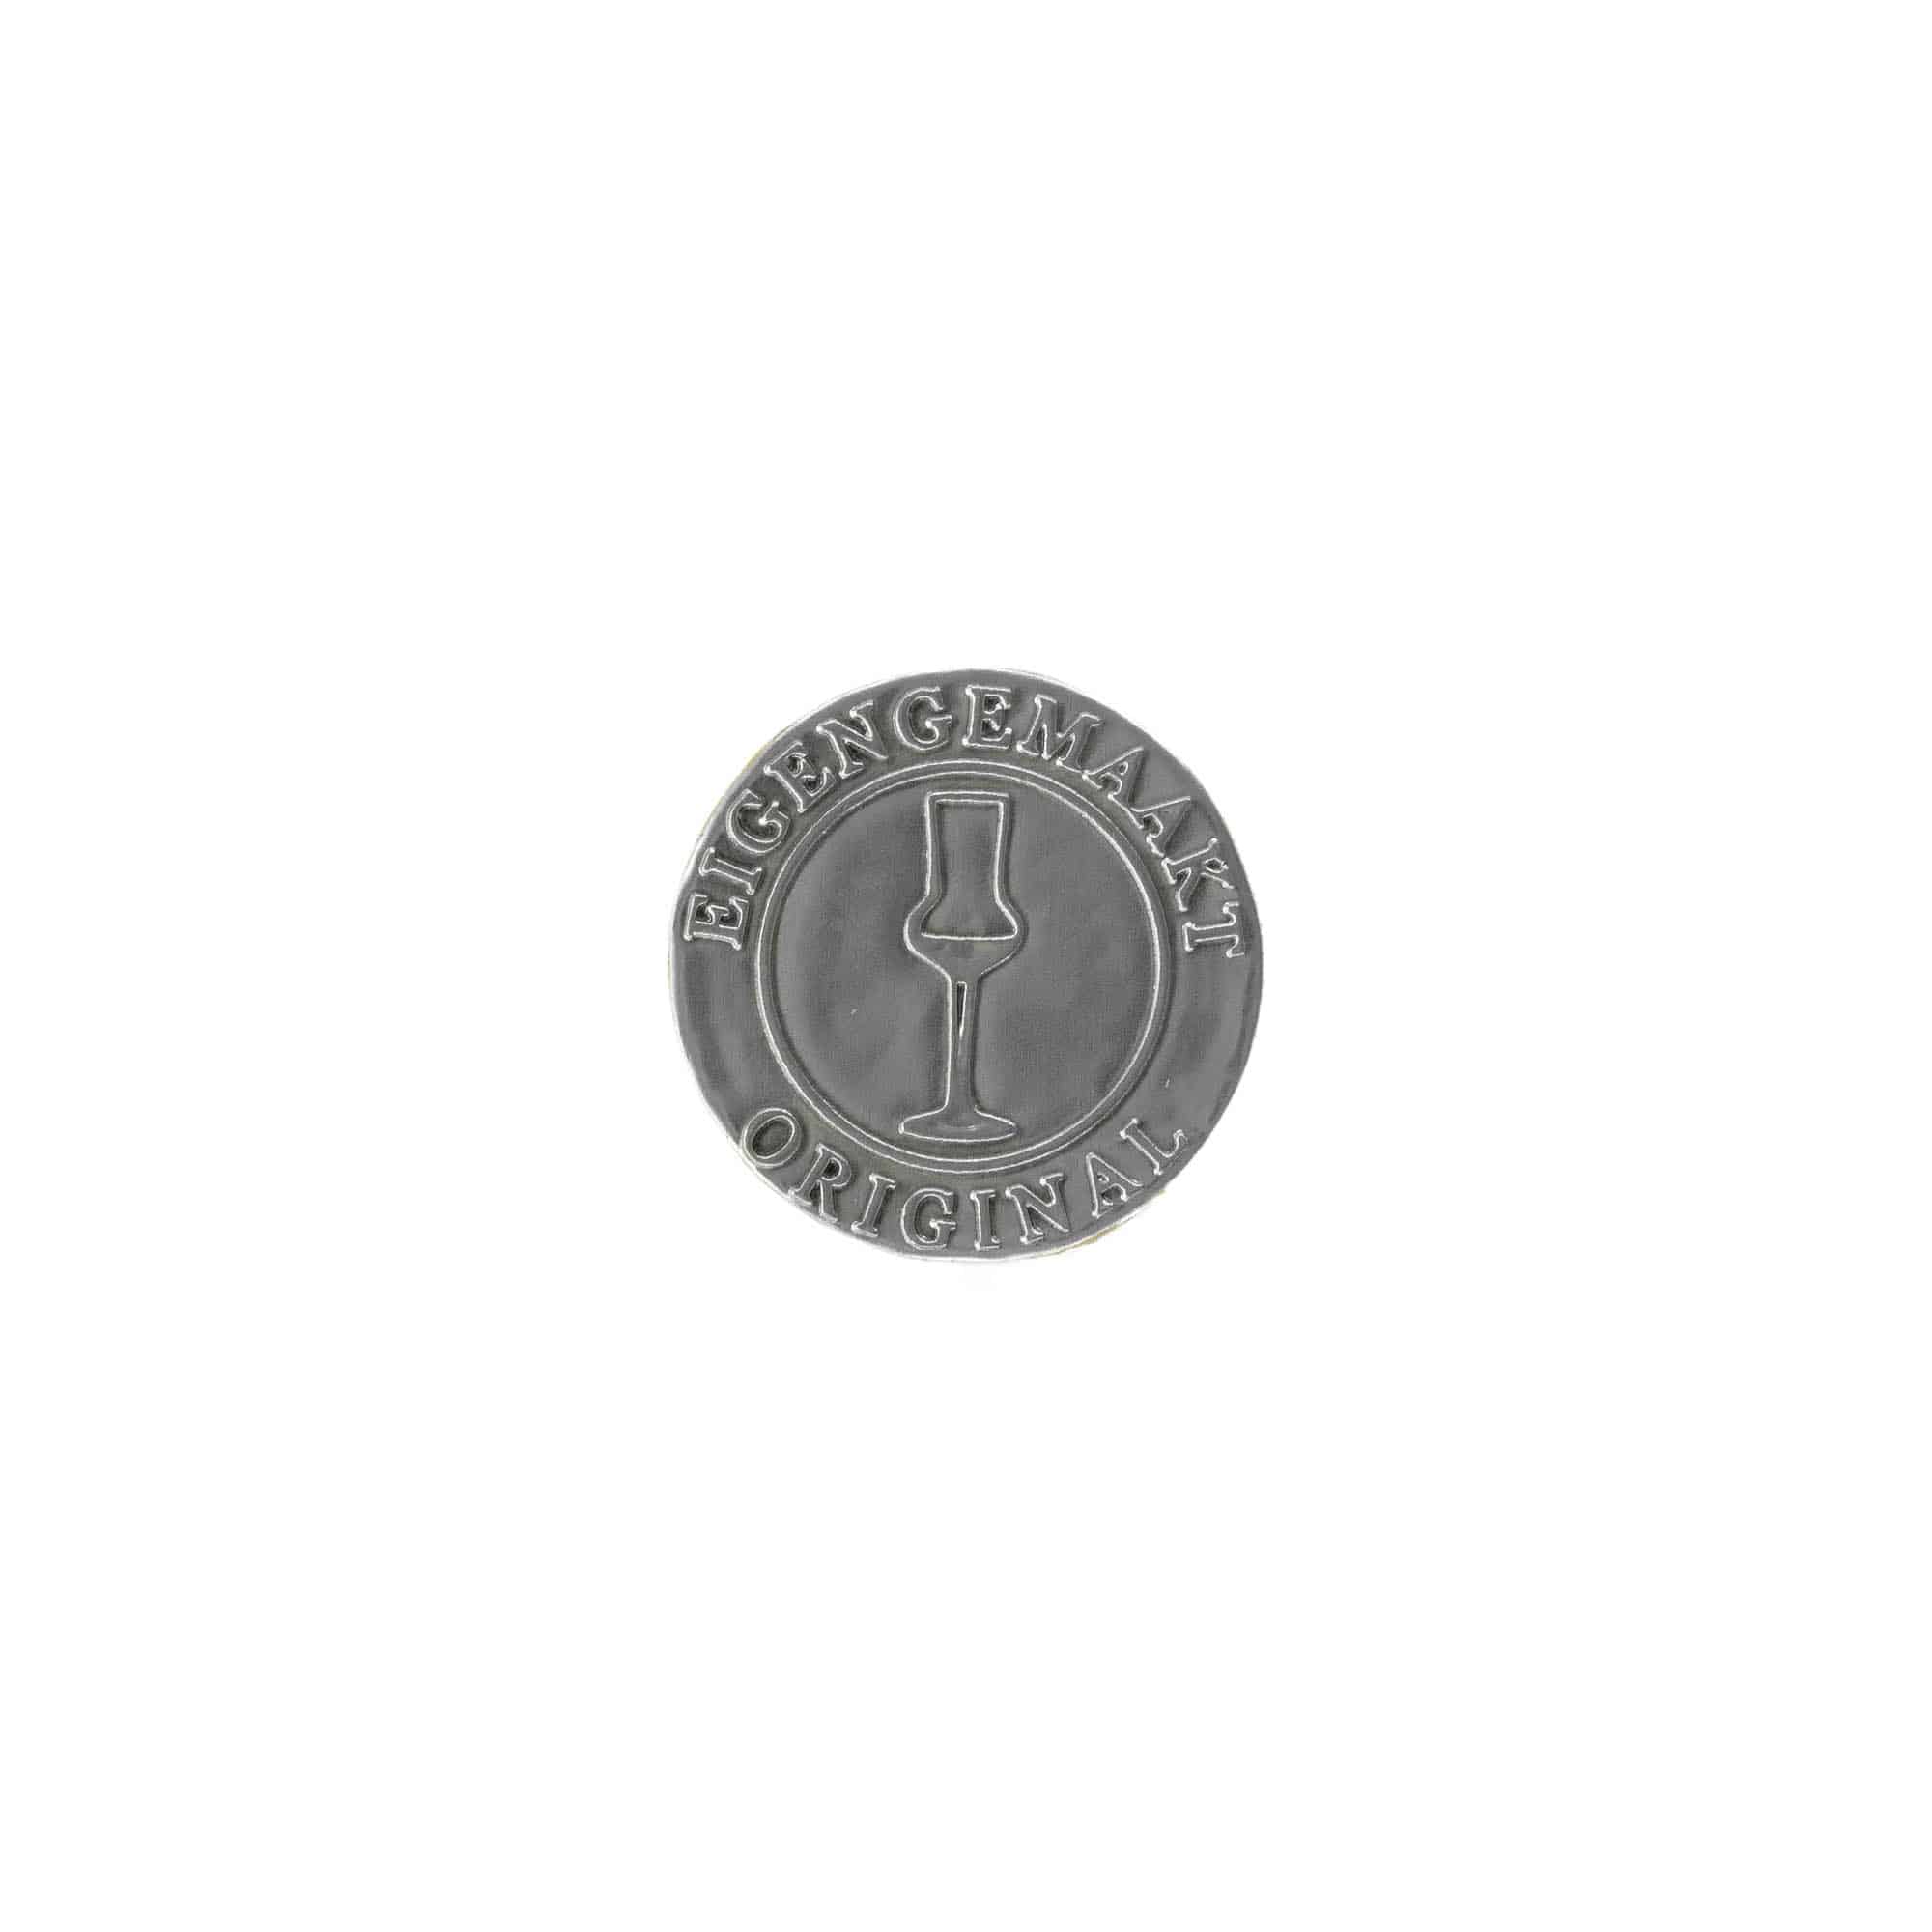 Etykieta cynowa 'Eigengemaakt', okrągła, metal, kolor srebrny